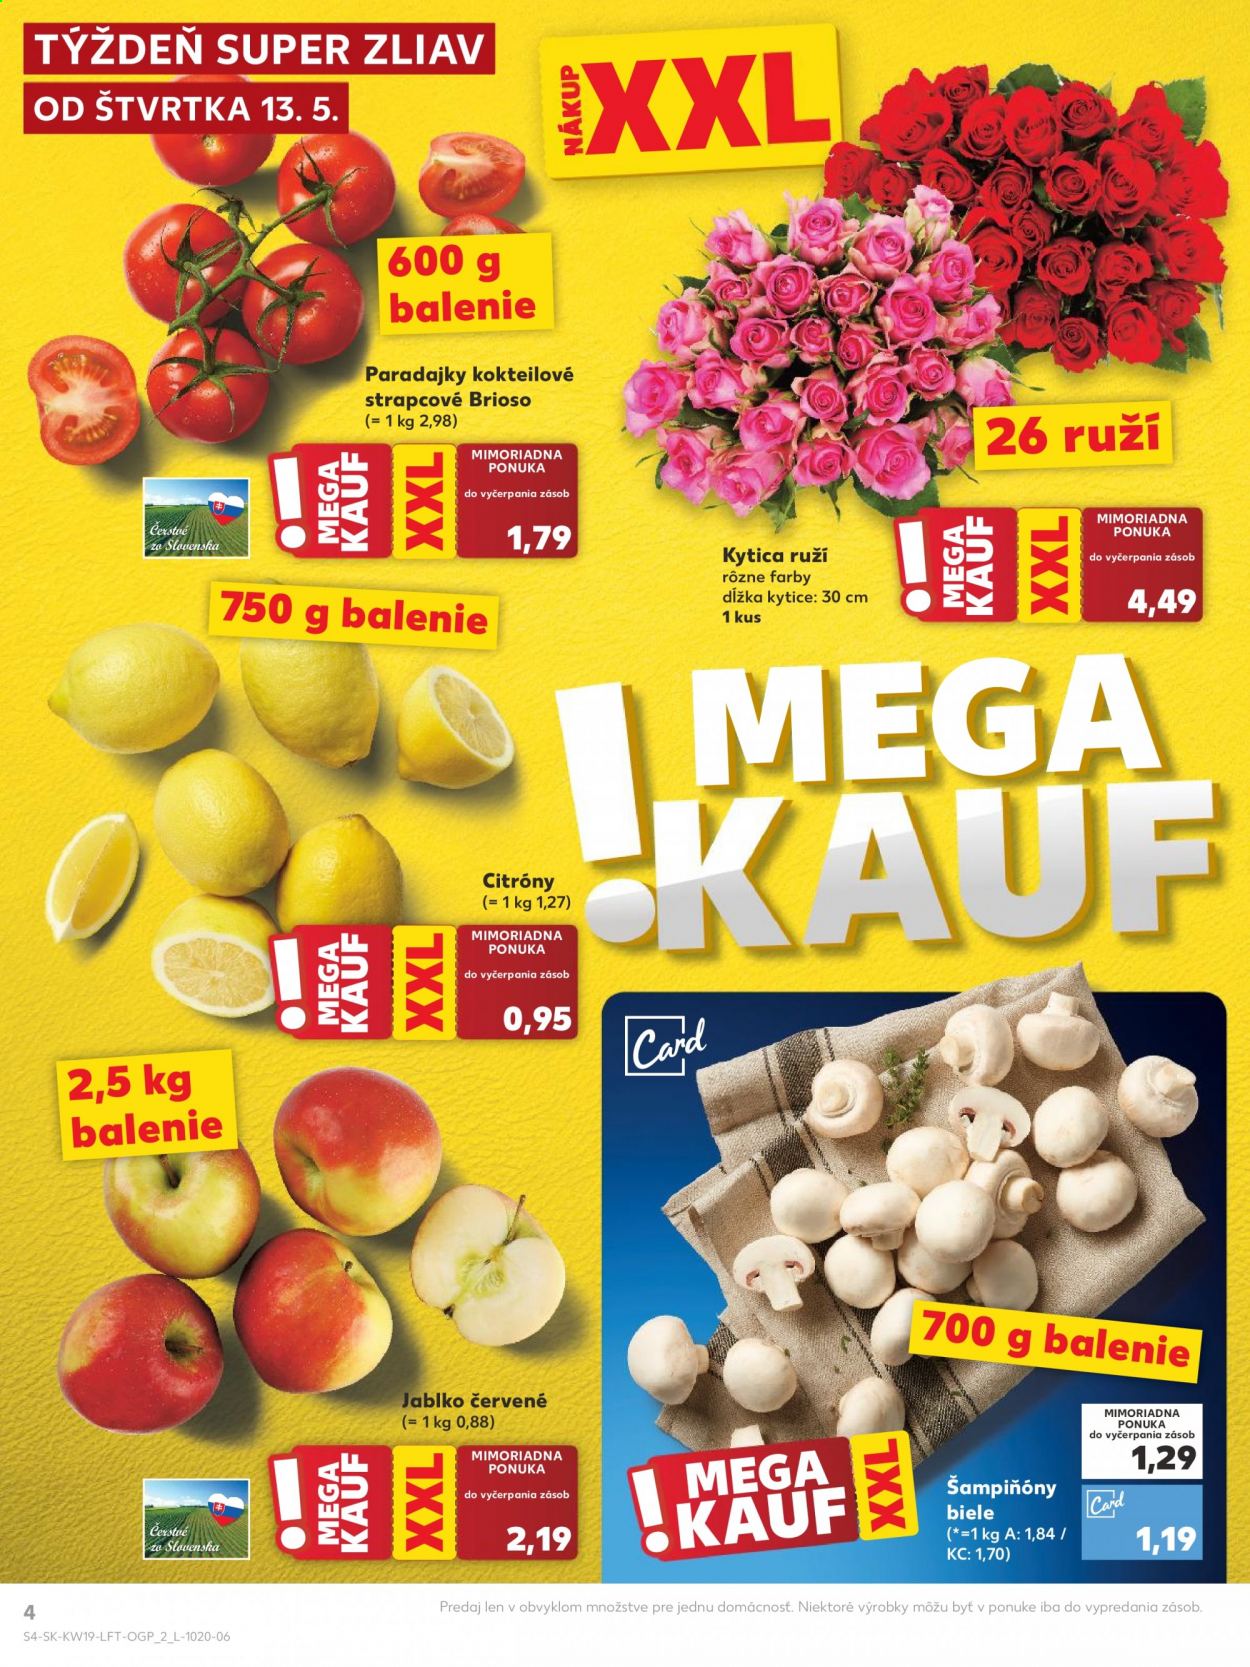 thumbnail - Leták Kaufland - 13.5.2021 - 19.5.2021 - Produkty v akcii - koktejlové paradajky, paradajky, citróny, jablká, kytica, šampiňóny. Strana 4.